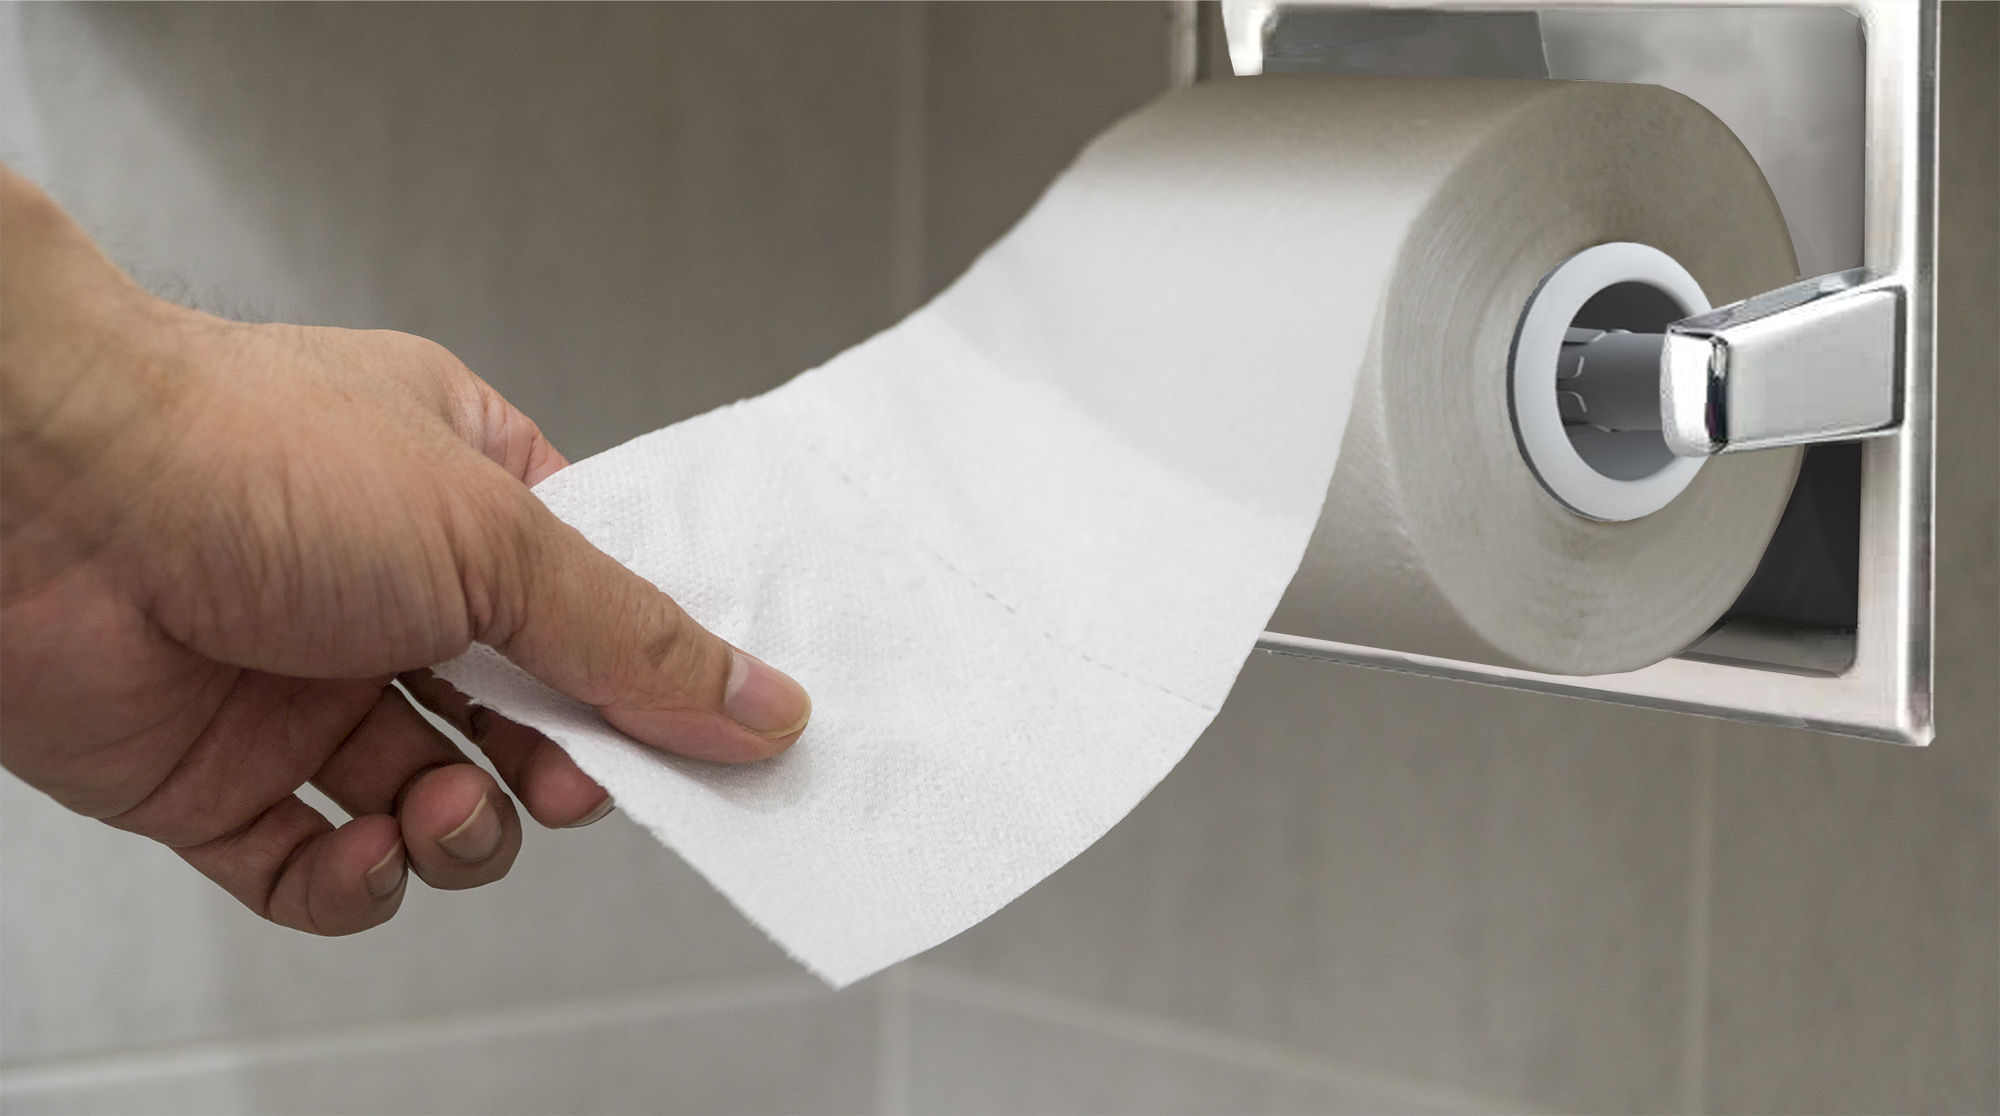 Есть ли разница, какой стороной вешать рулон туалетной бумаги на держатель?